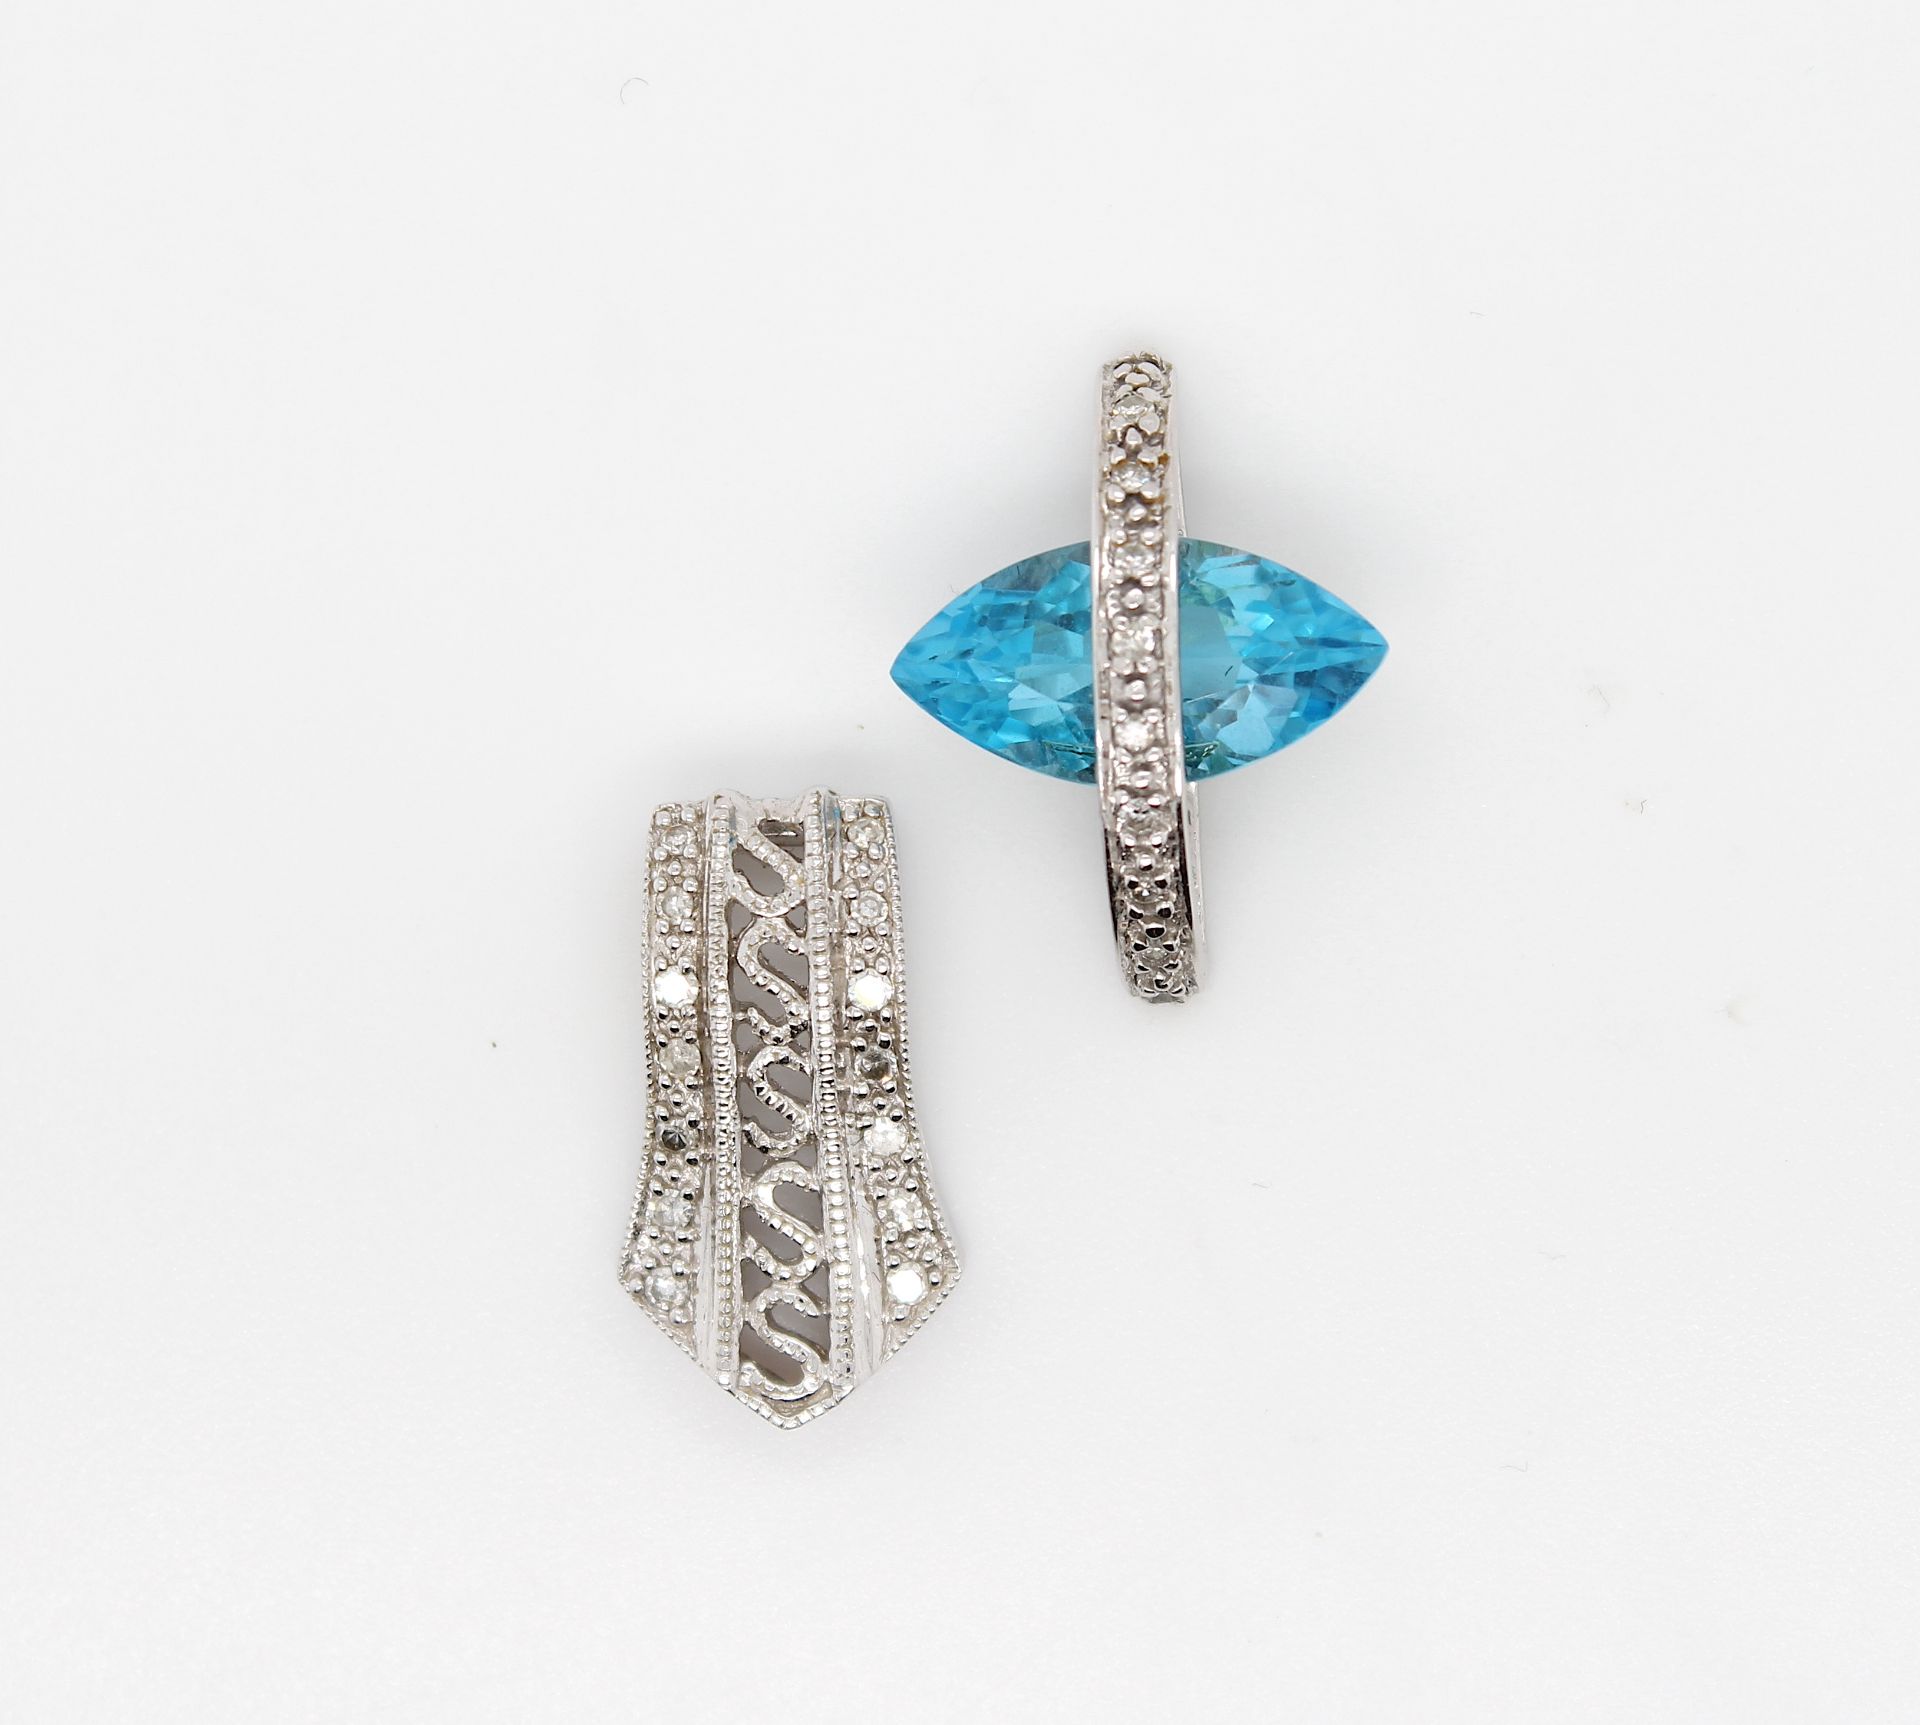 2 pendants with diamonds and topaz